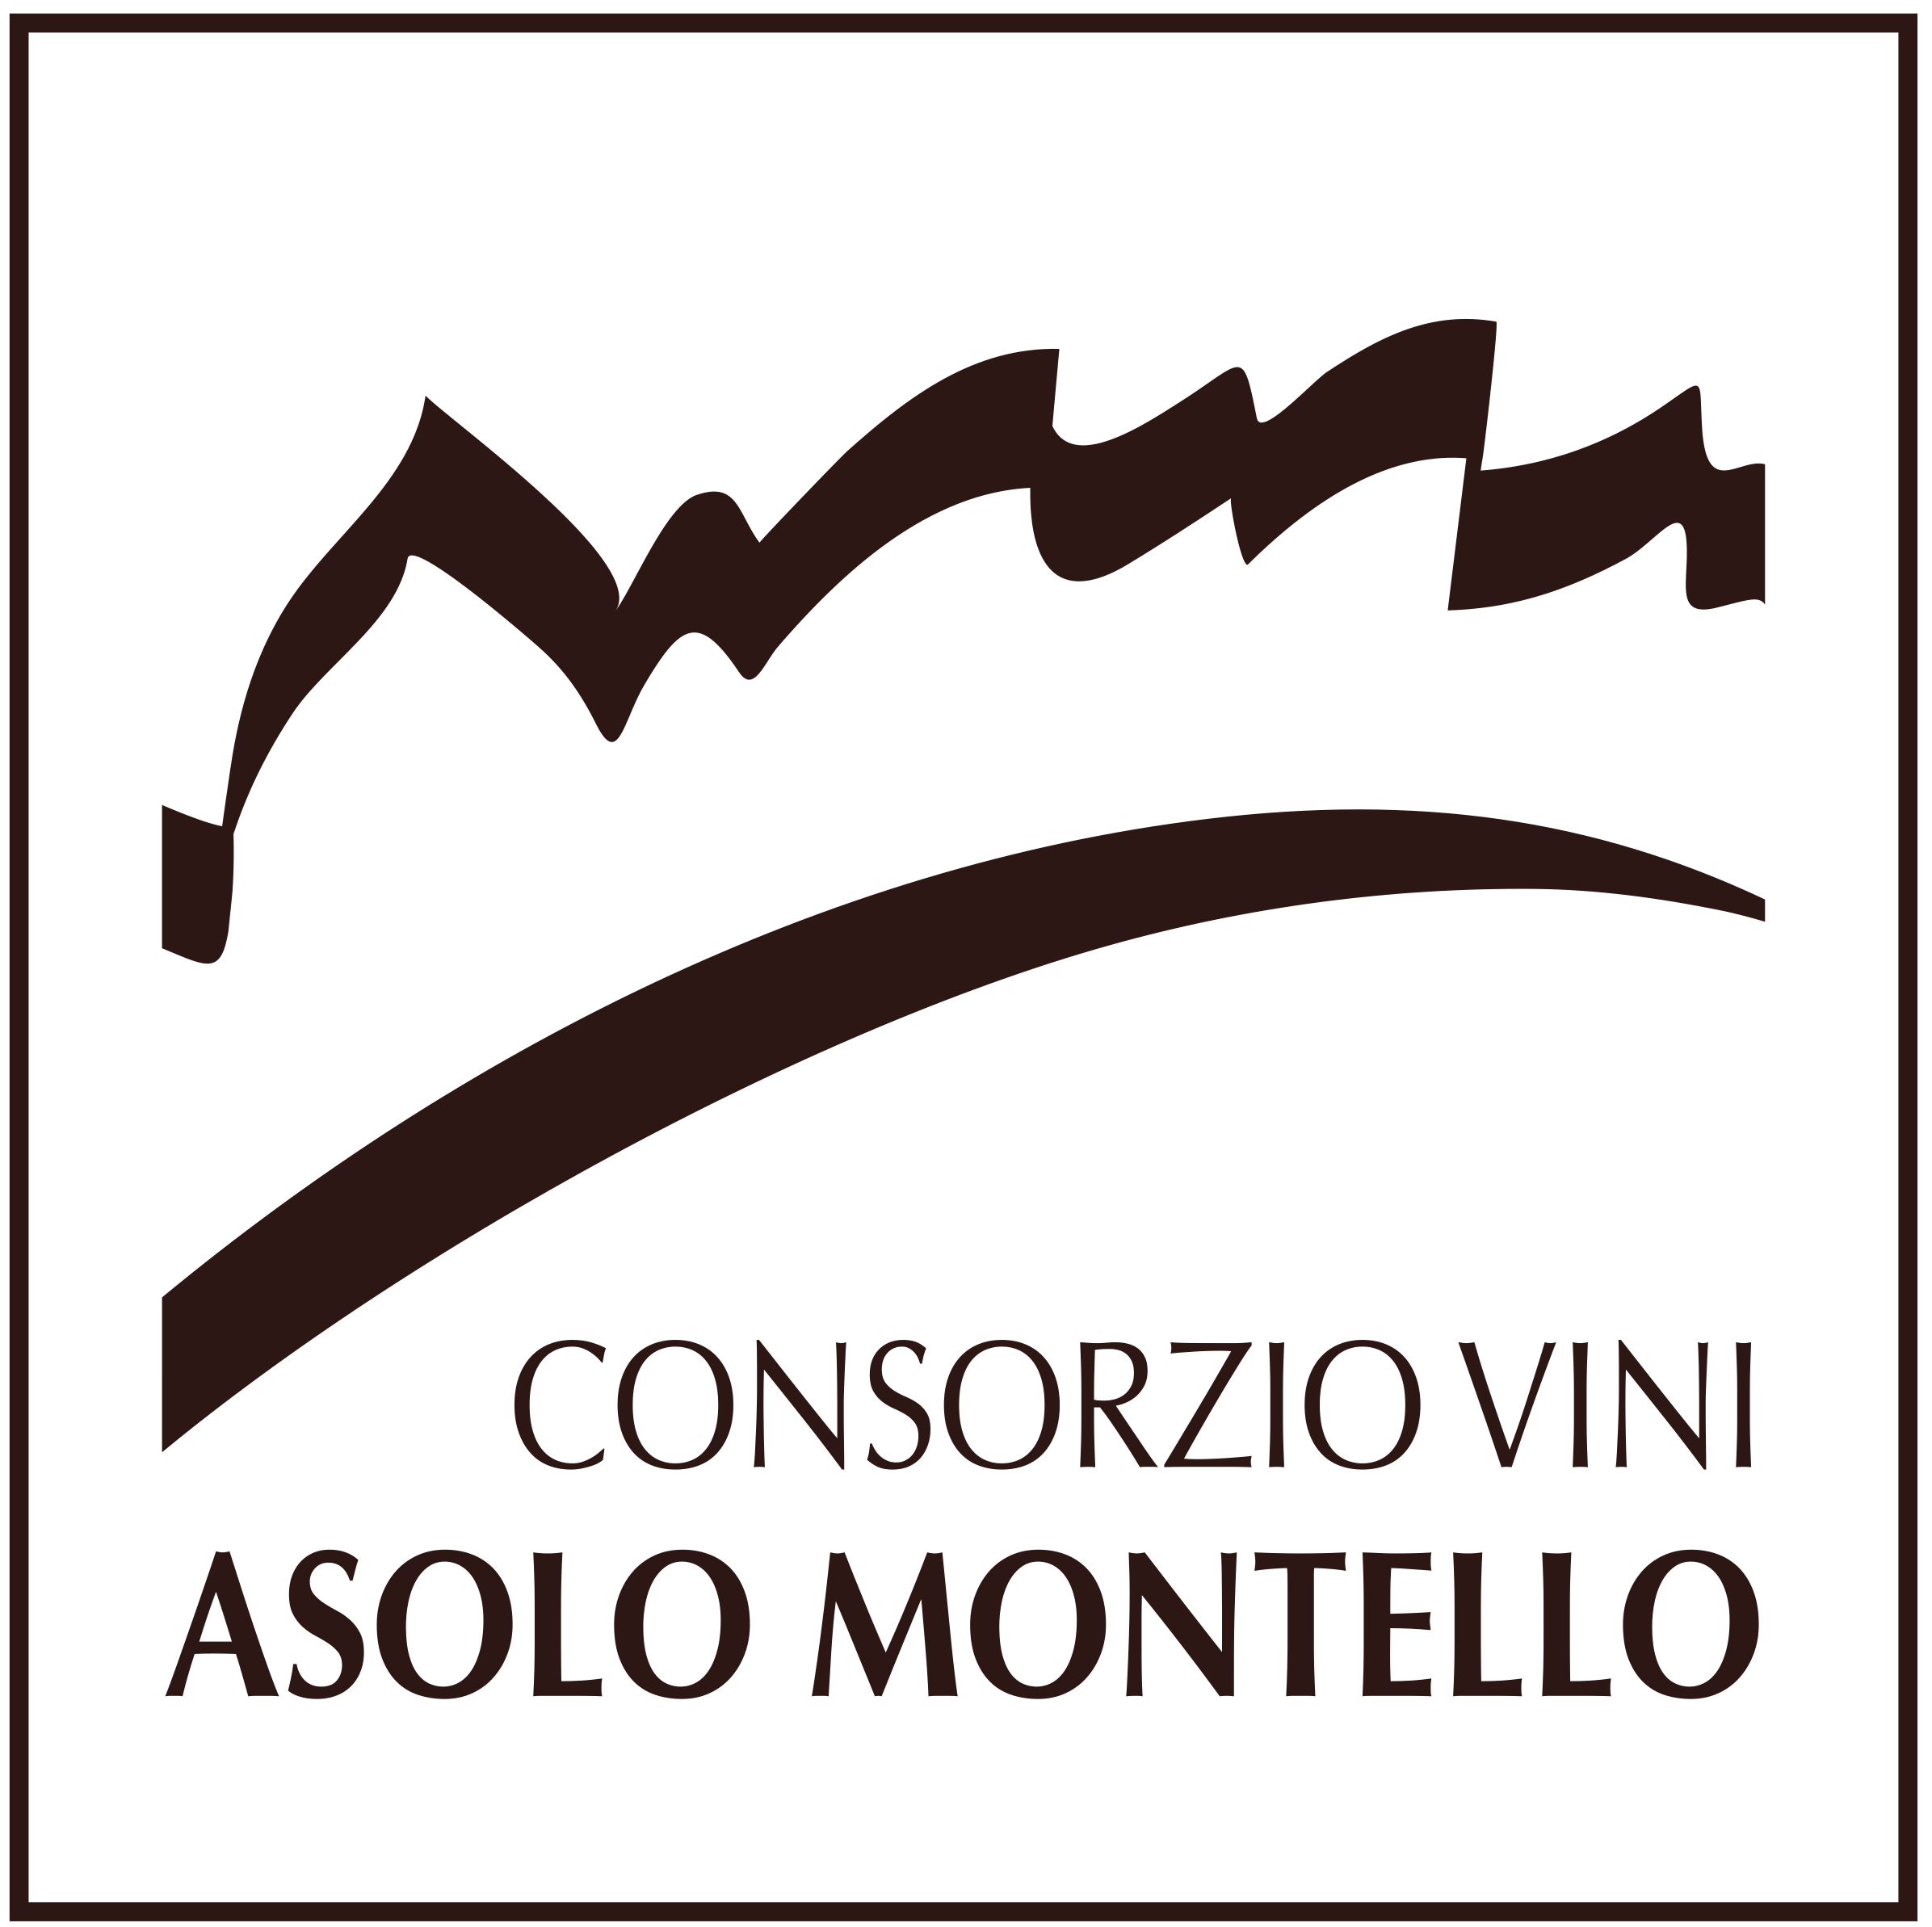 Consorzio Vini Asolo Montello